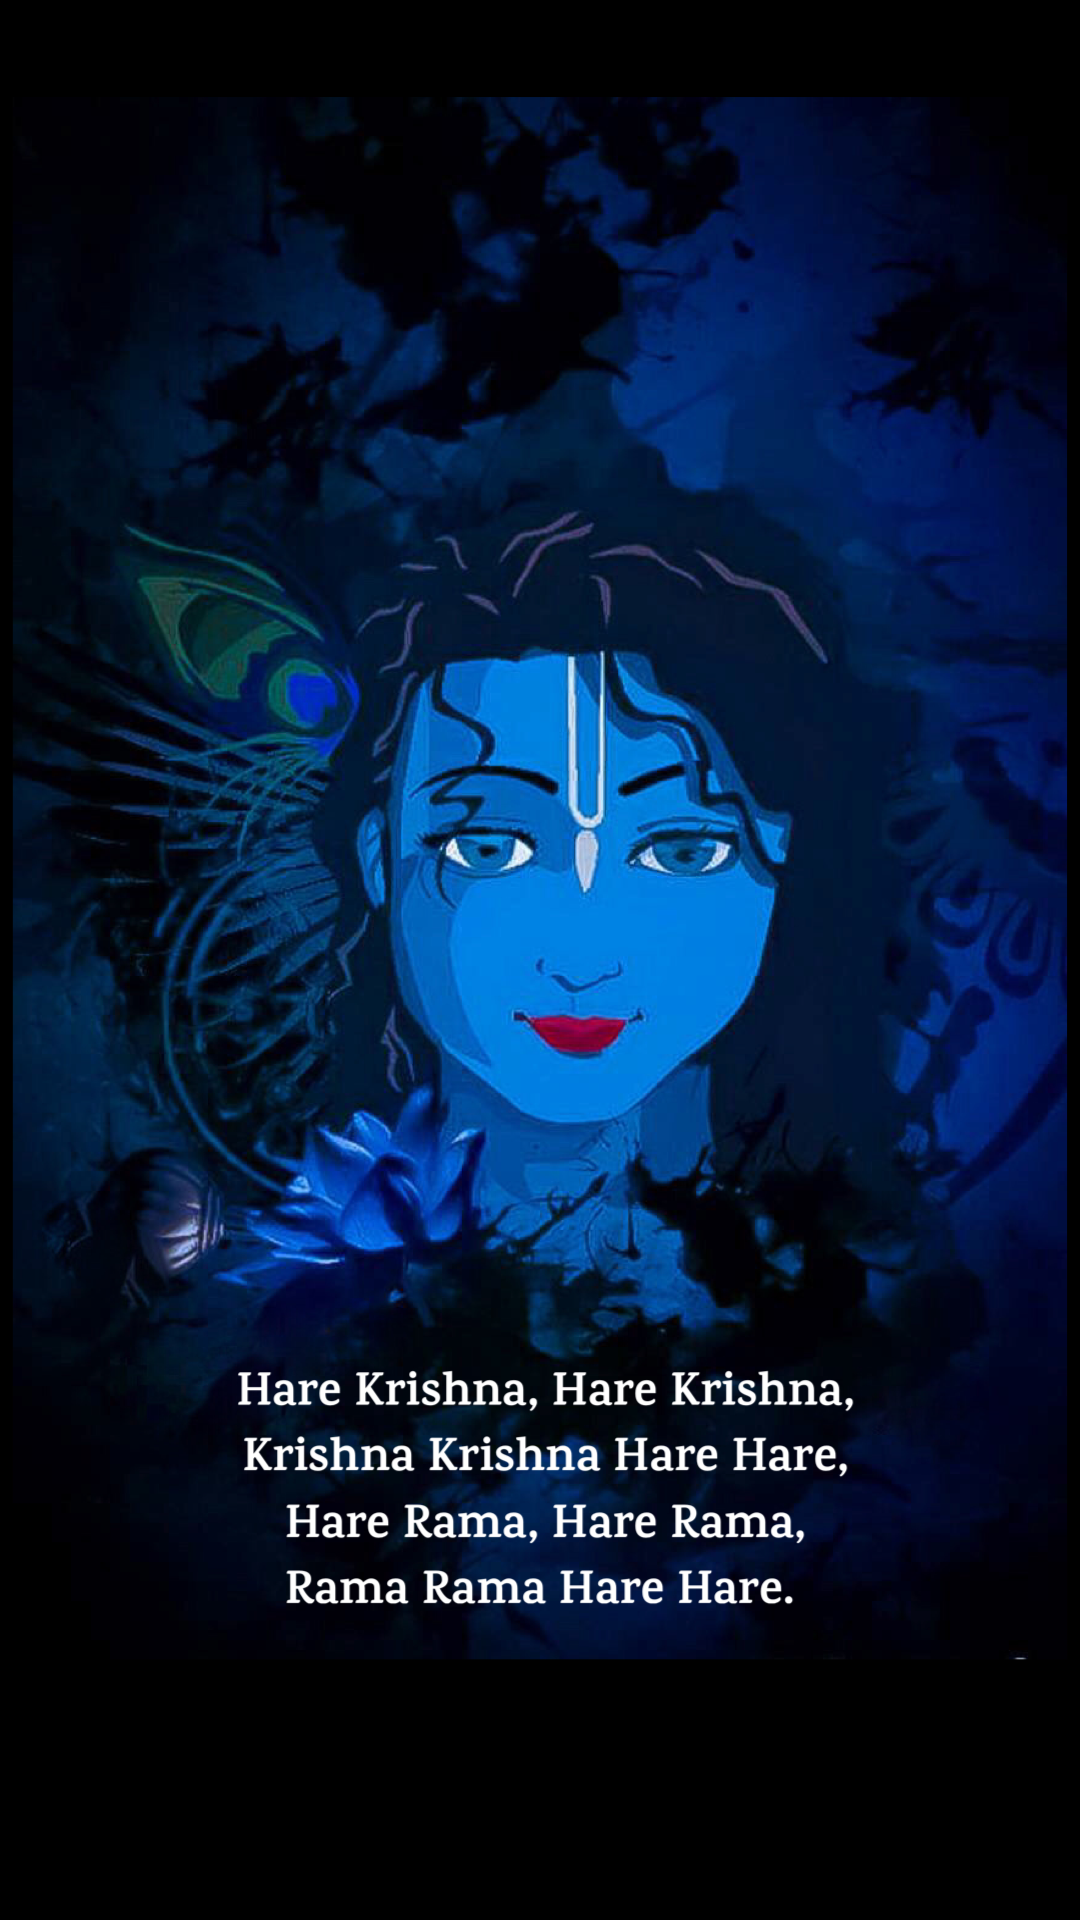 iOS Krishna Wallpaper. Krishna wallpaper, Lord krishna HD wallpaper, Krishna picture